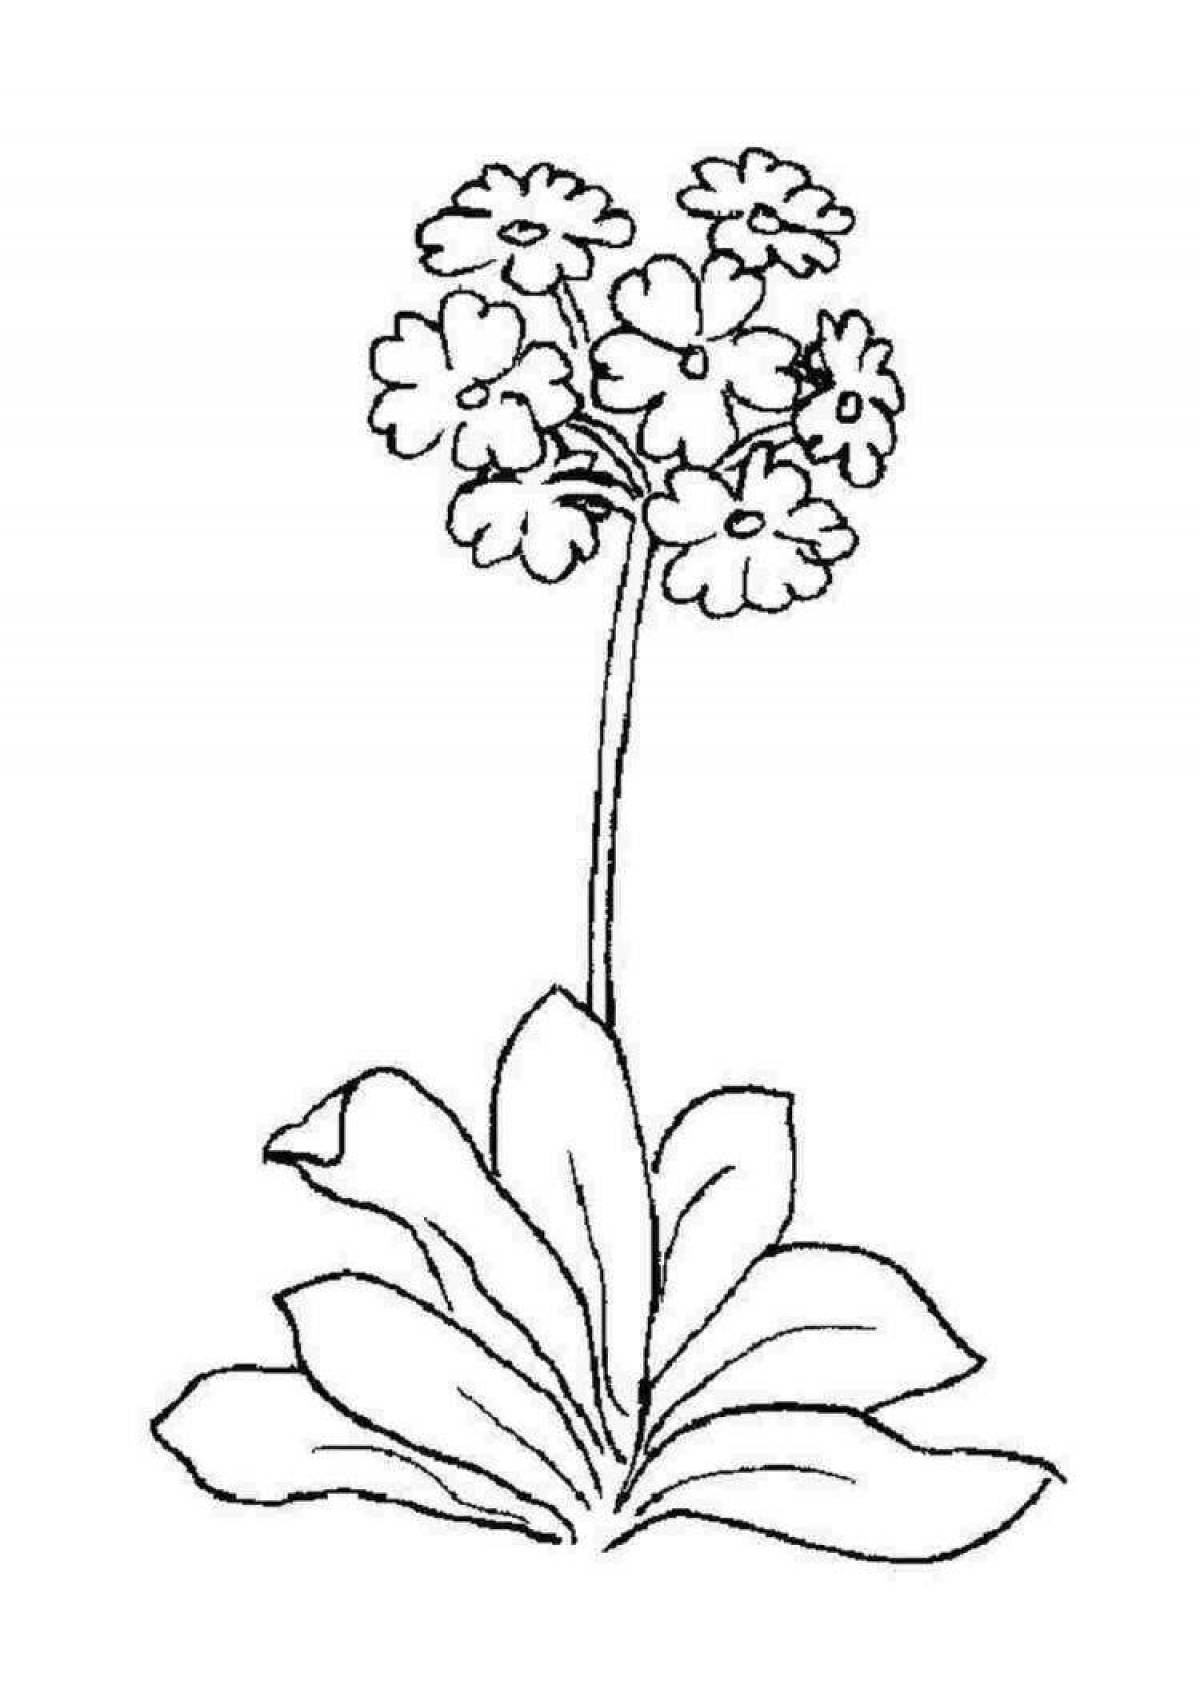 Corydalis dainty primrose coloring page